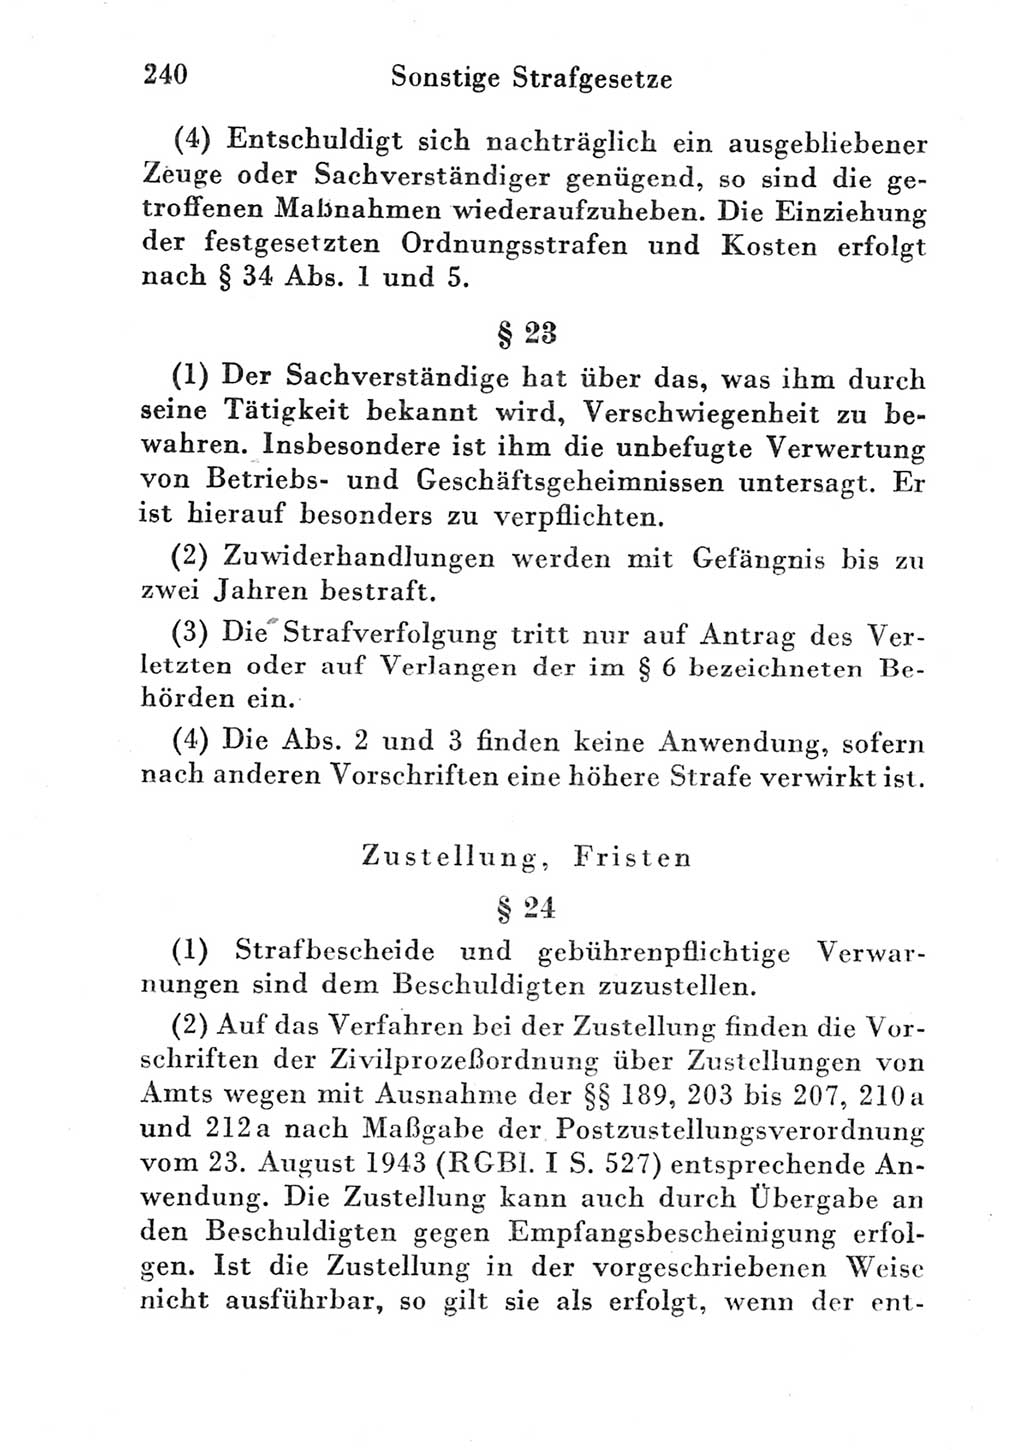 Strafgesetzbuch (StGB) und andere Strafgesetze [Deutsche Demokratische Republik (DDR)] 1951, Seite 240 (StGB Strafges. DDR 1951, S. 240)